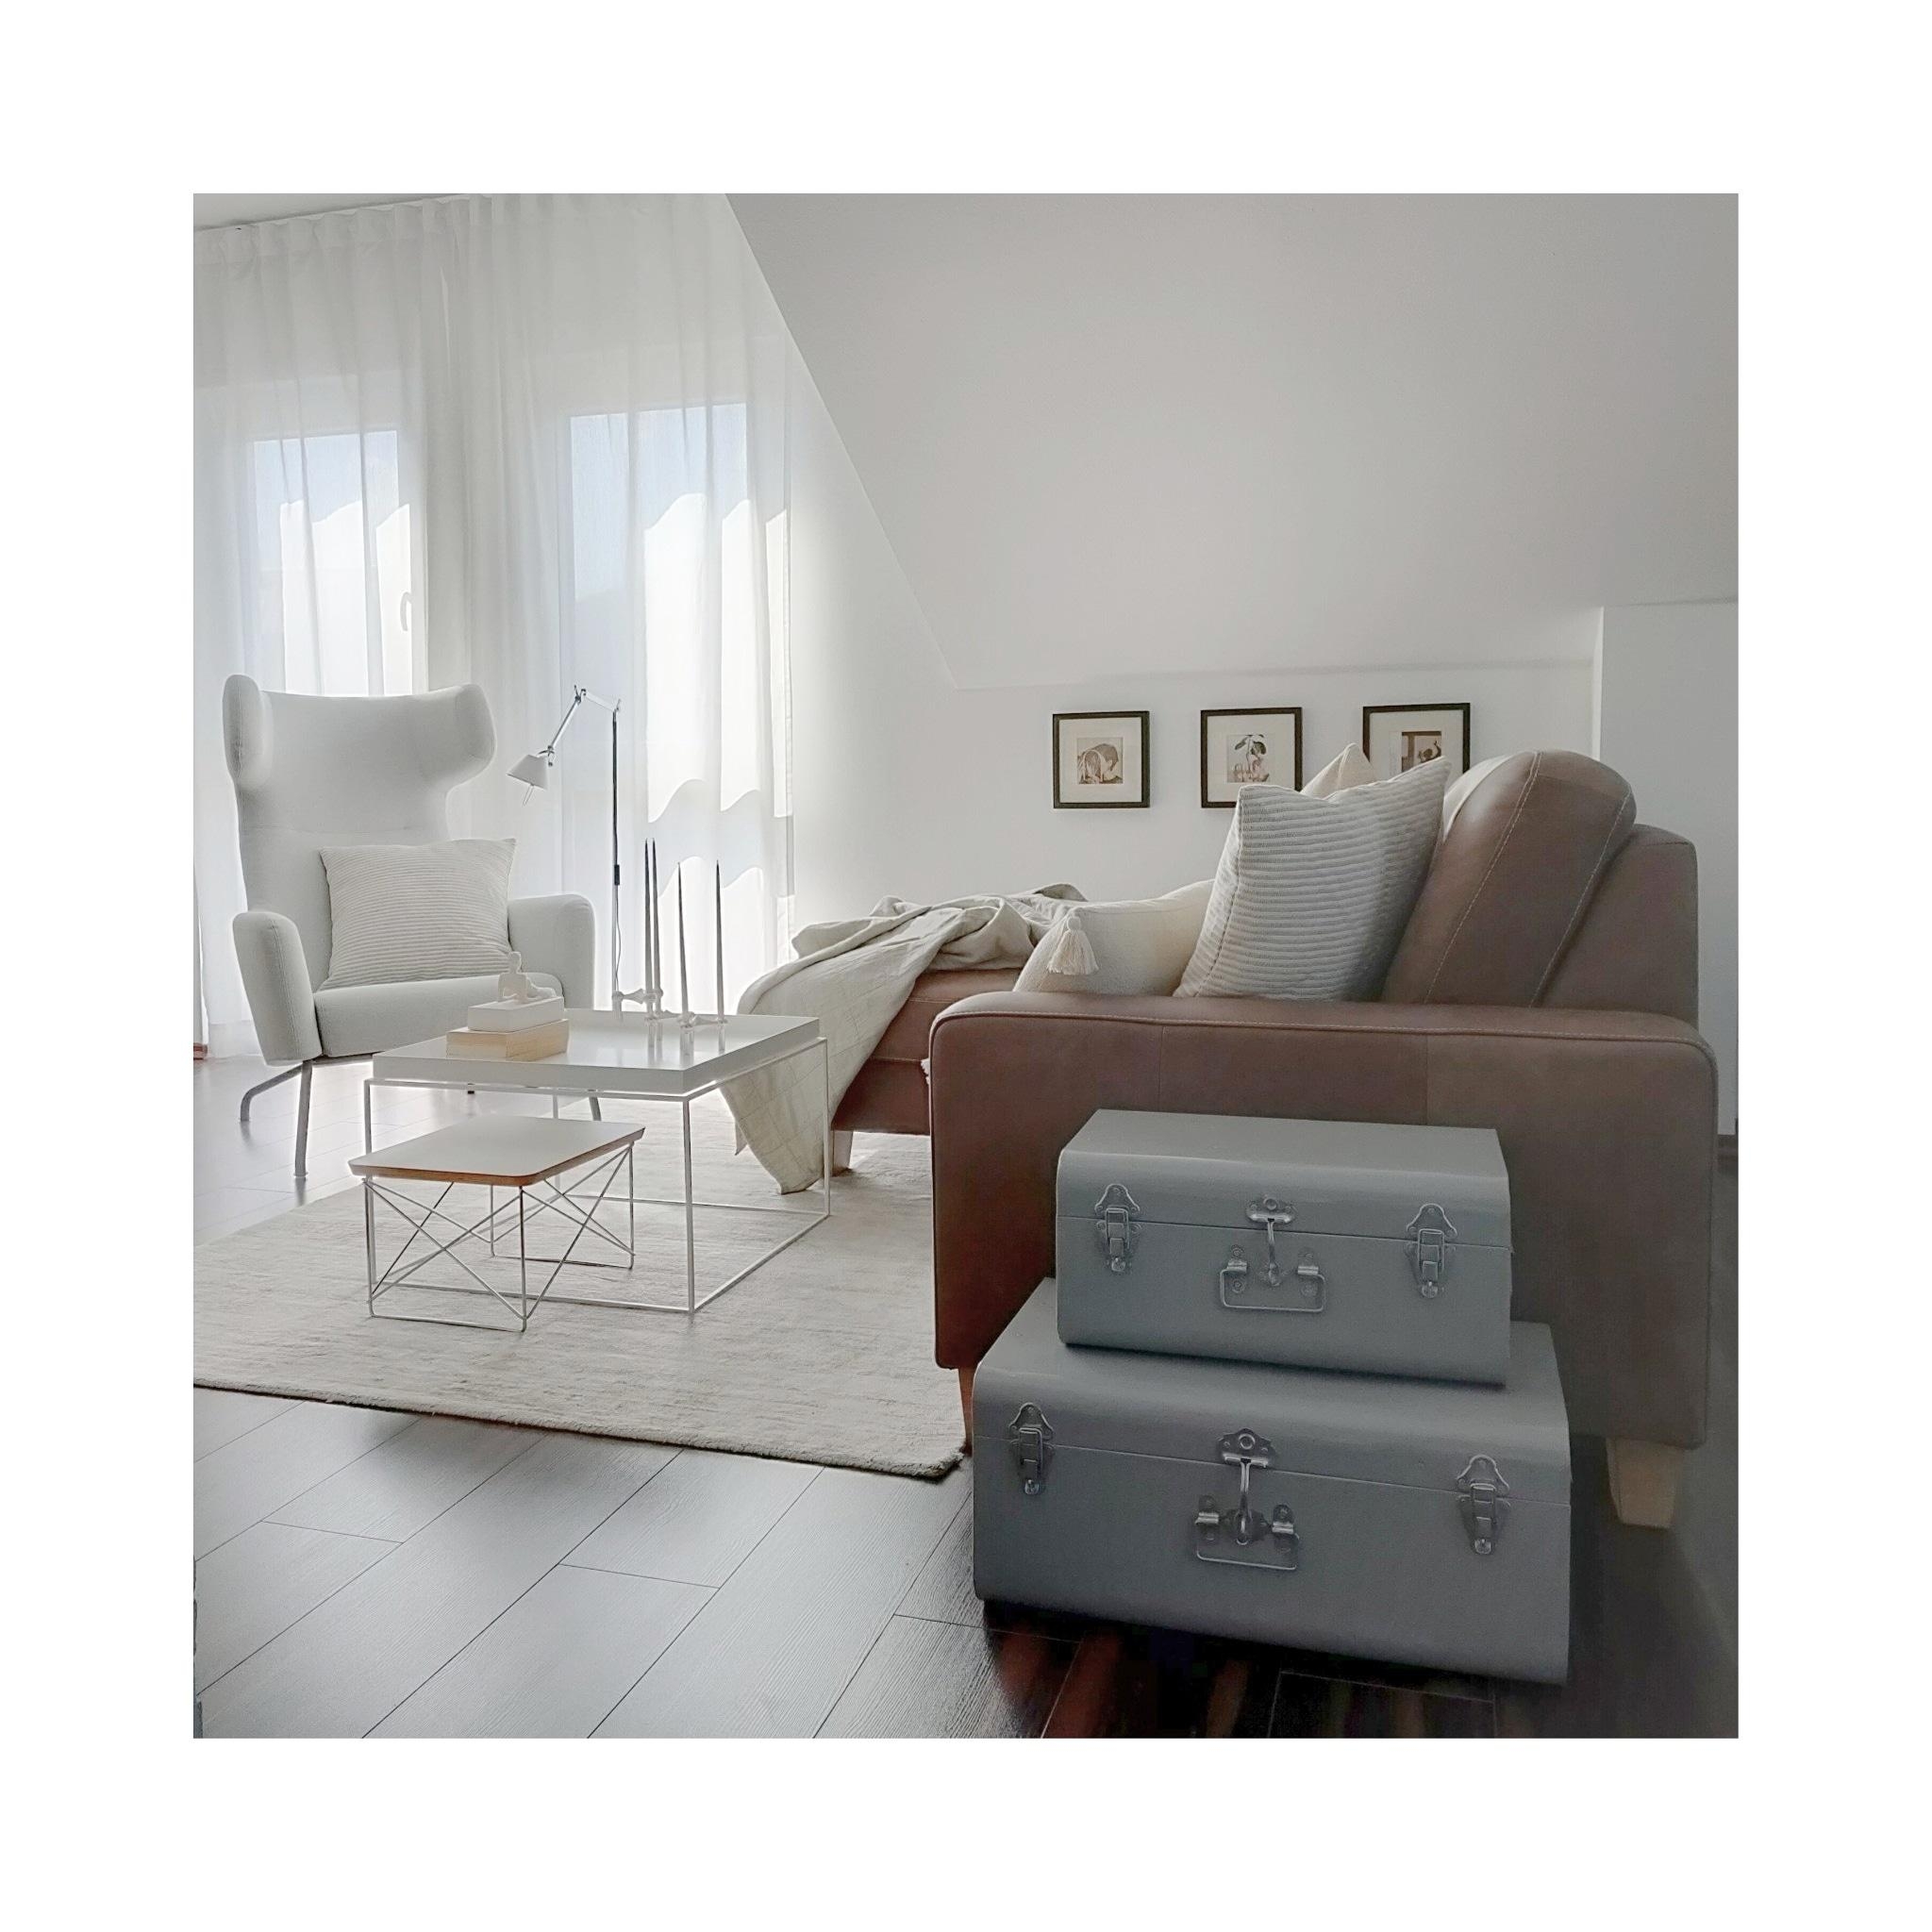 Ein bisschen Licht
#wohnen #deko #design #wohnzimner